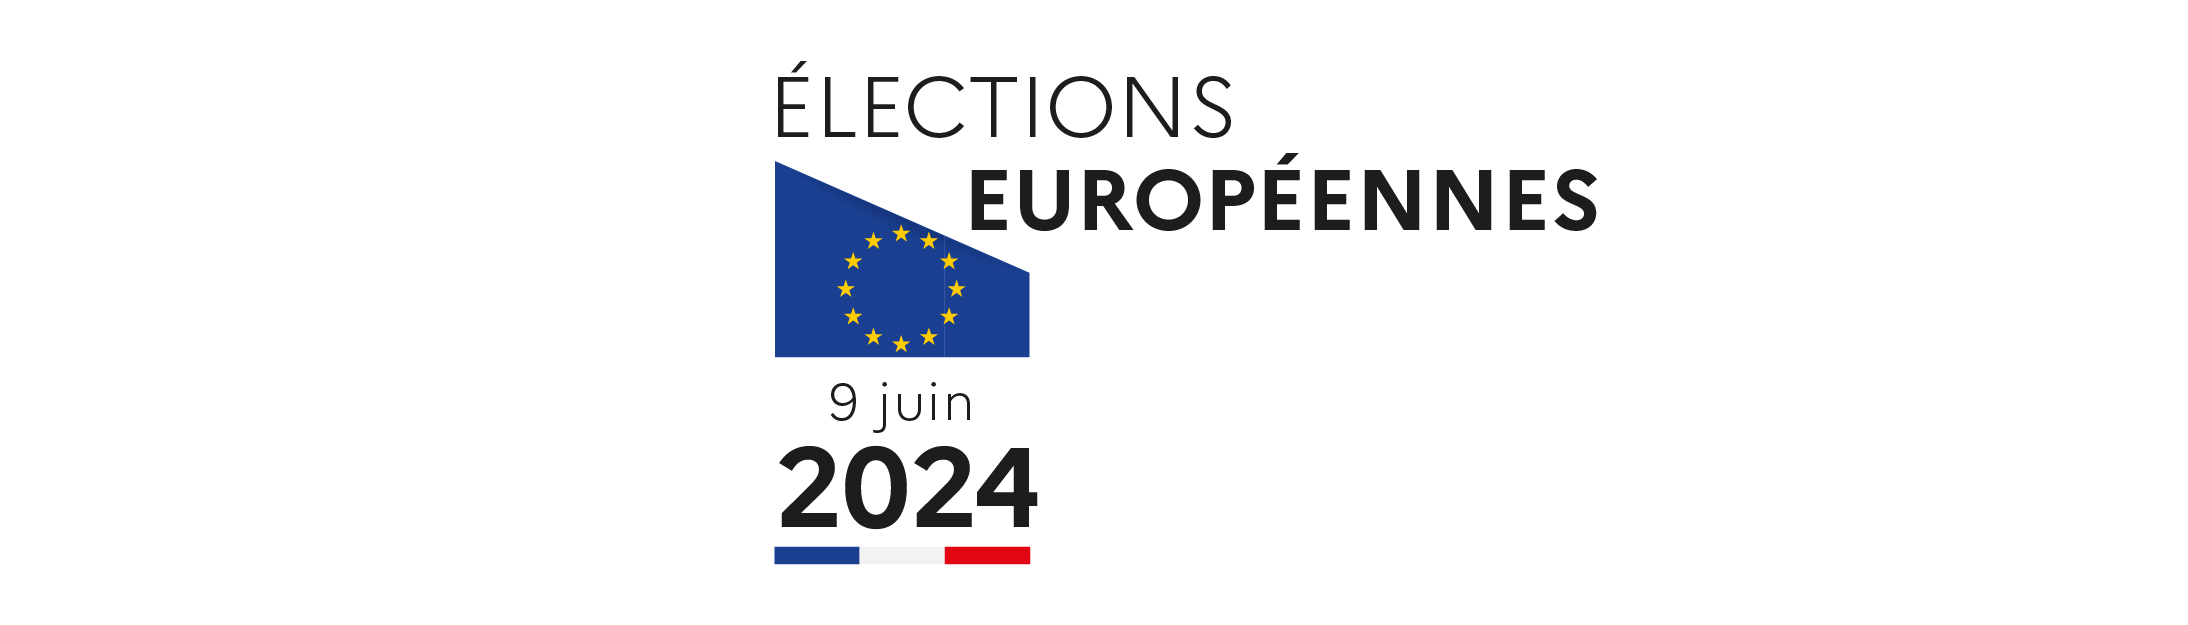 Résultats Elections Européennes du 9 juin 2024